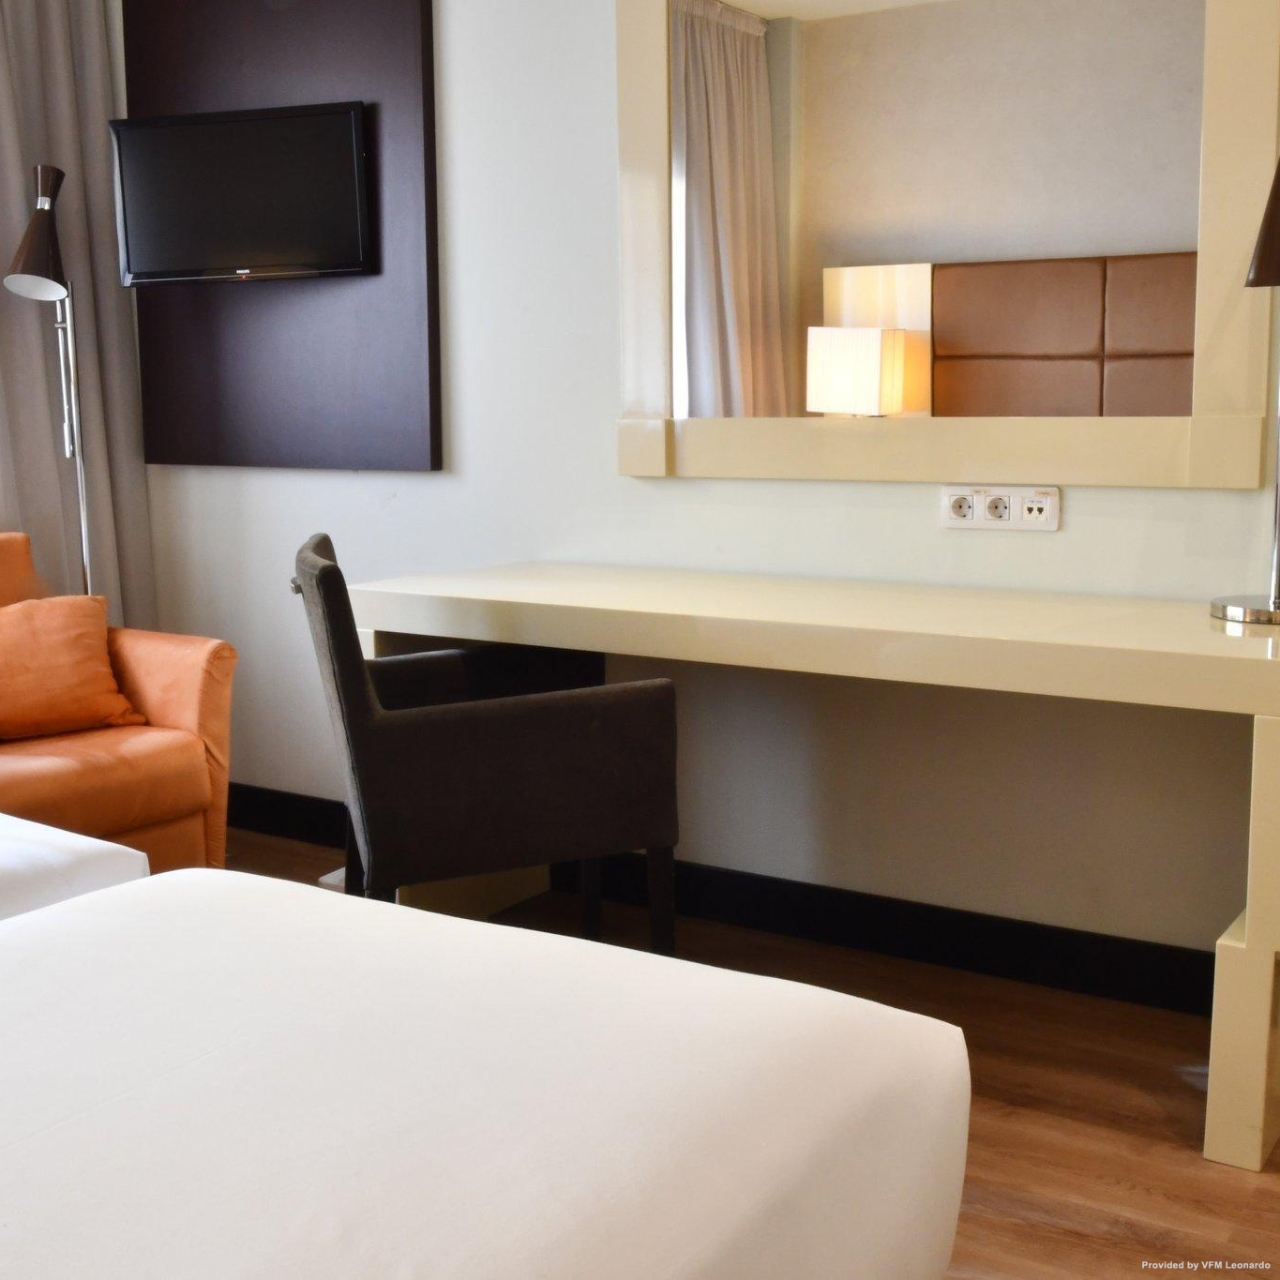 Holiday Inn MADRID - LAS TABLAS en Madrid en HRS con servicios gratuitos